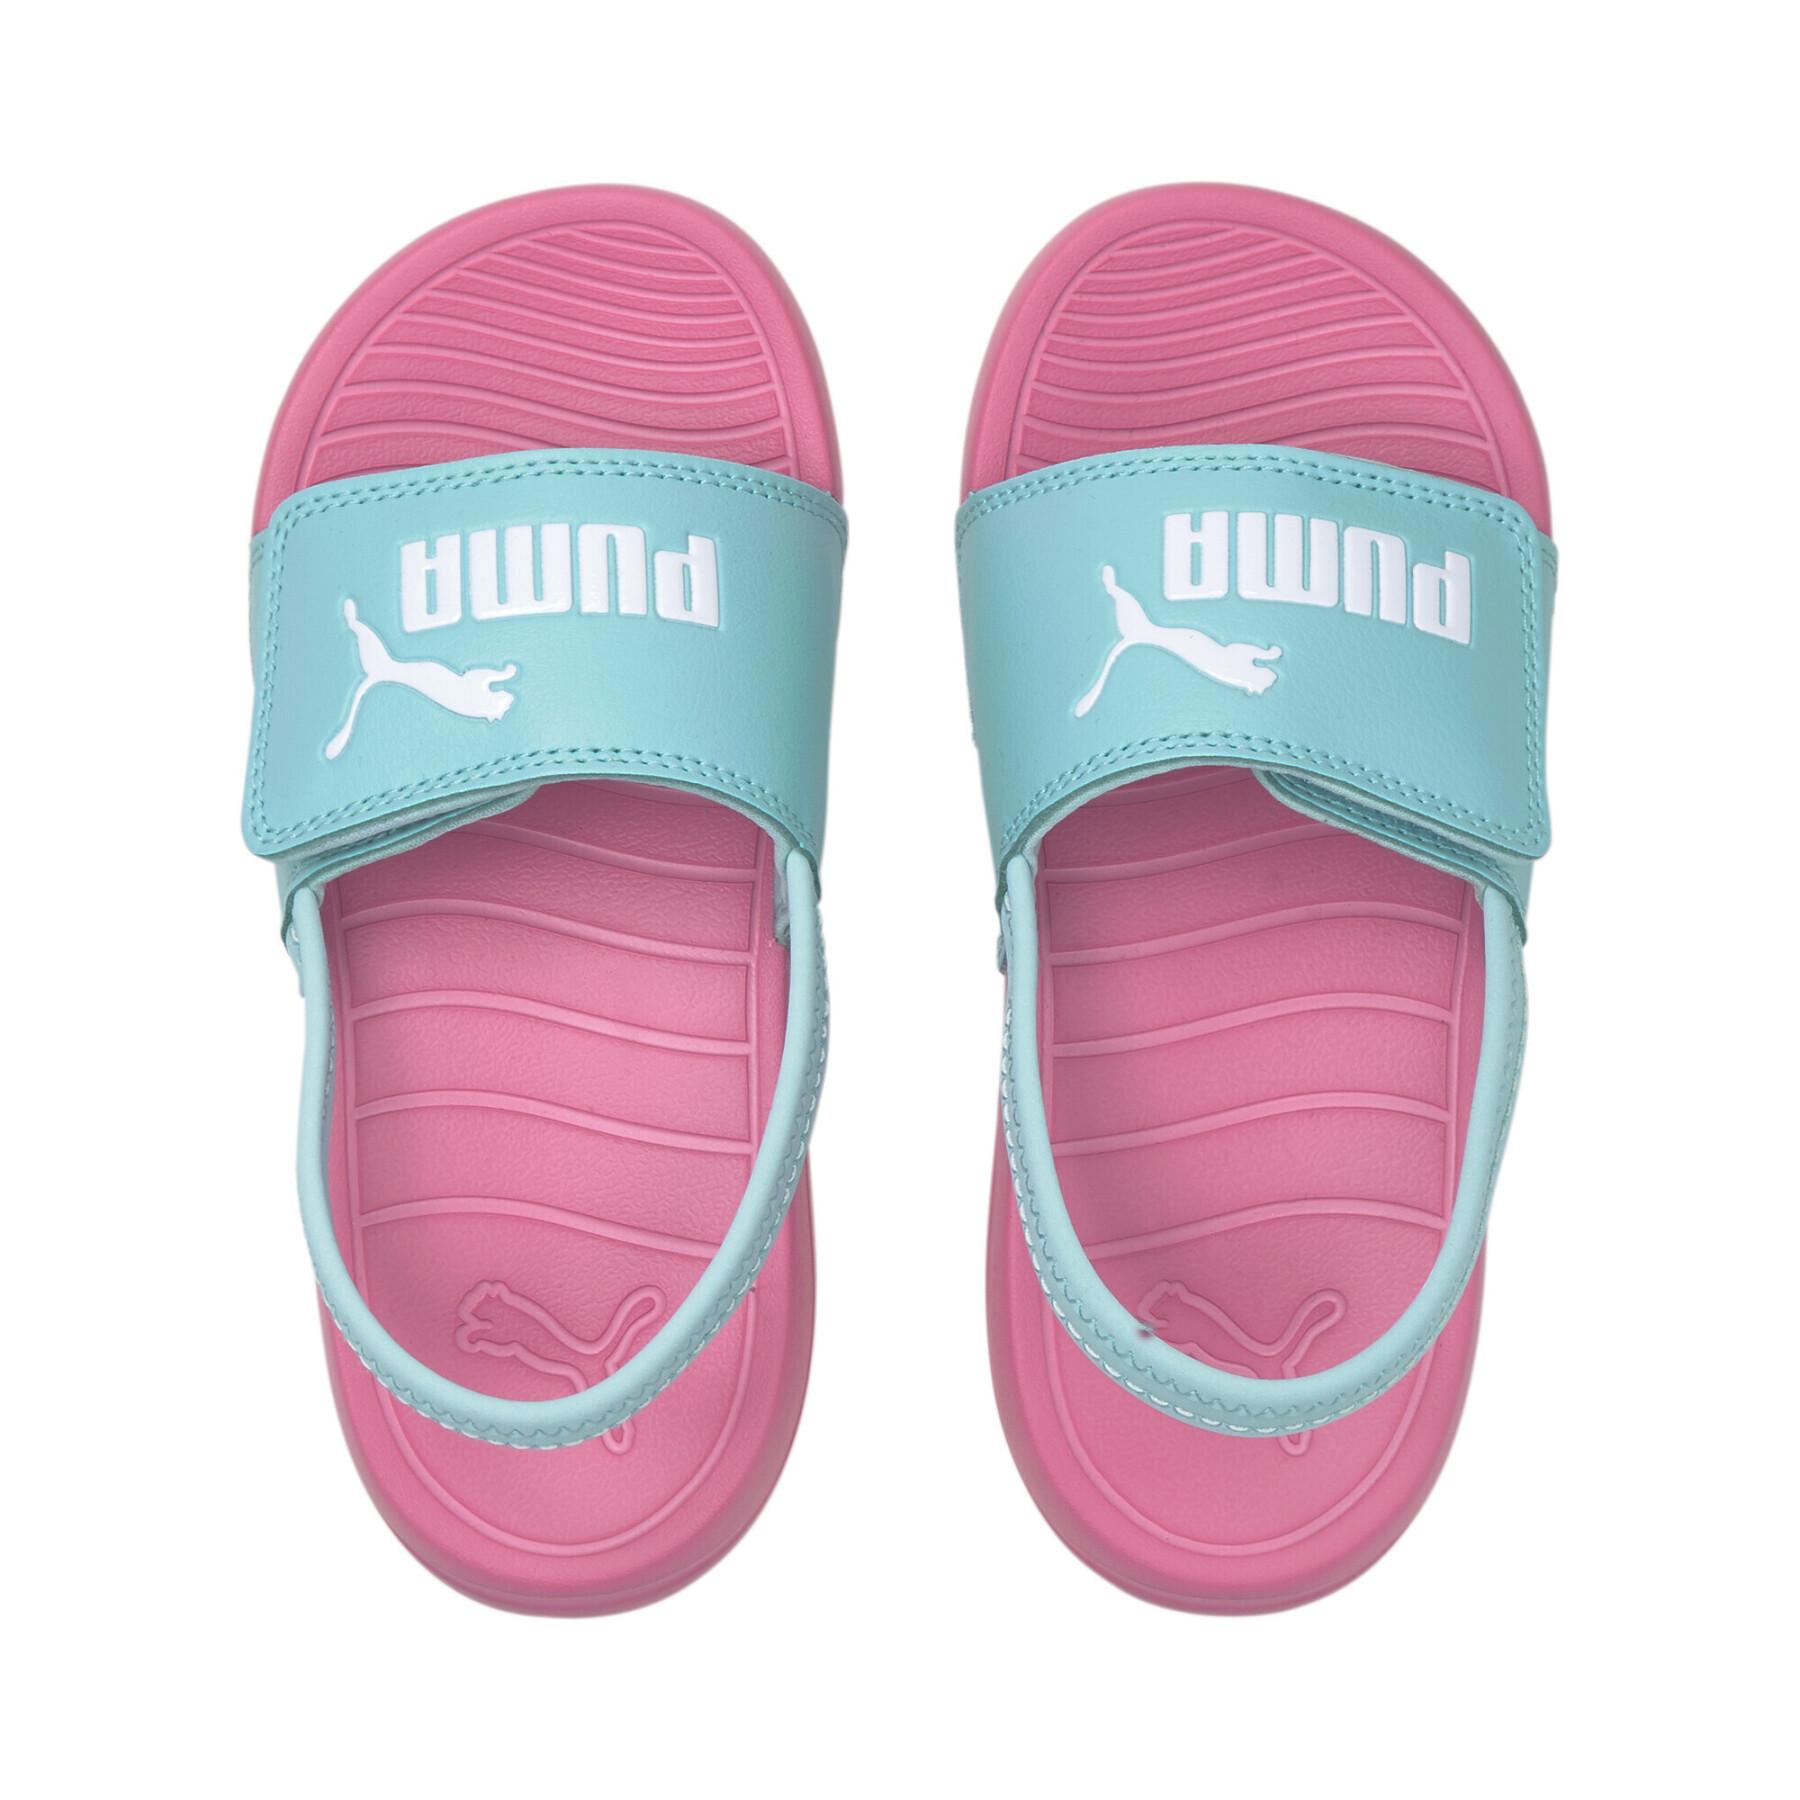 Sandálias para crianças Puma Popcat 20 Backstrap